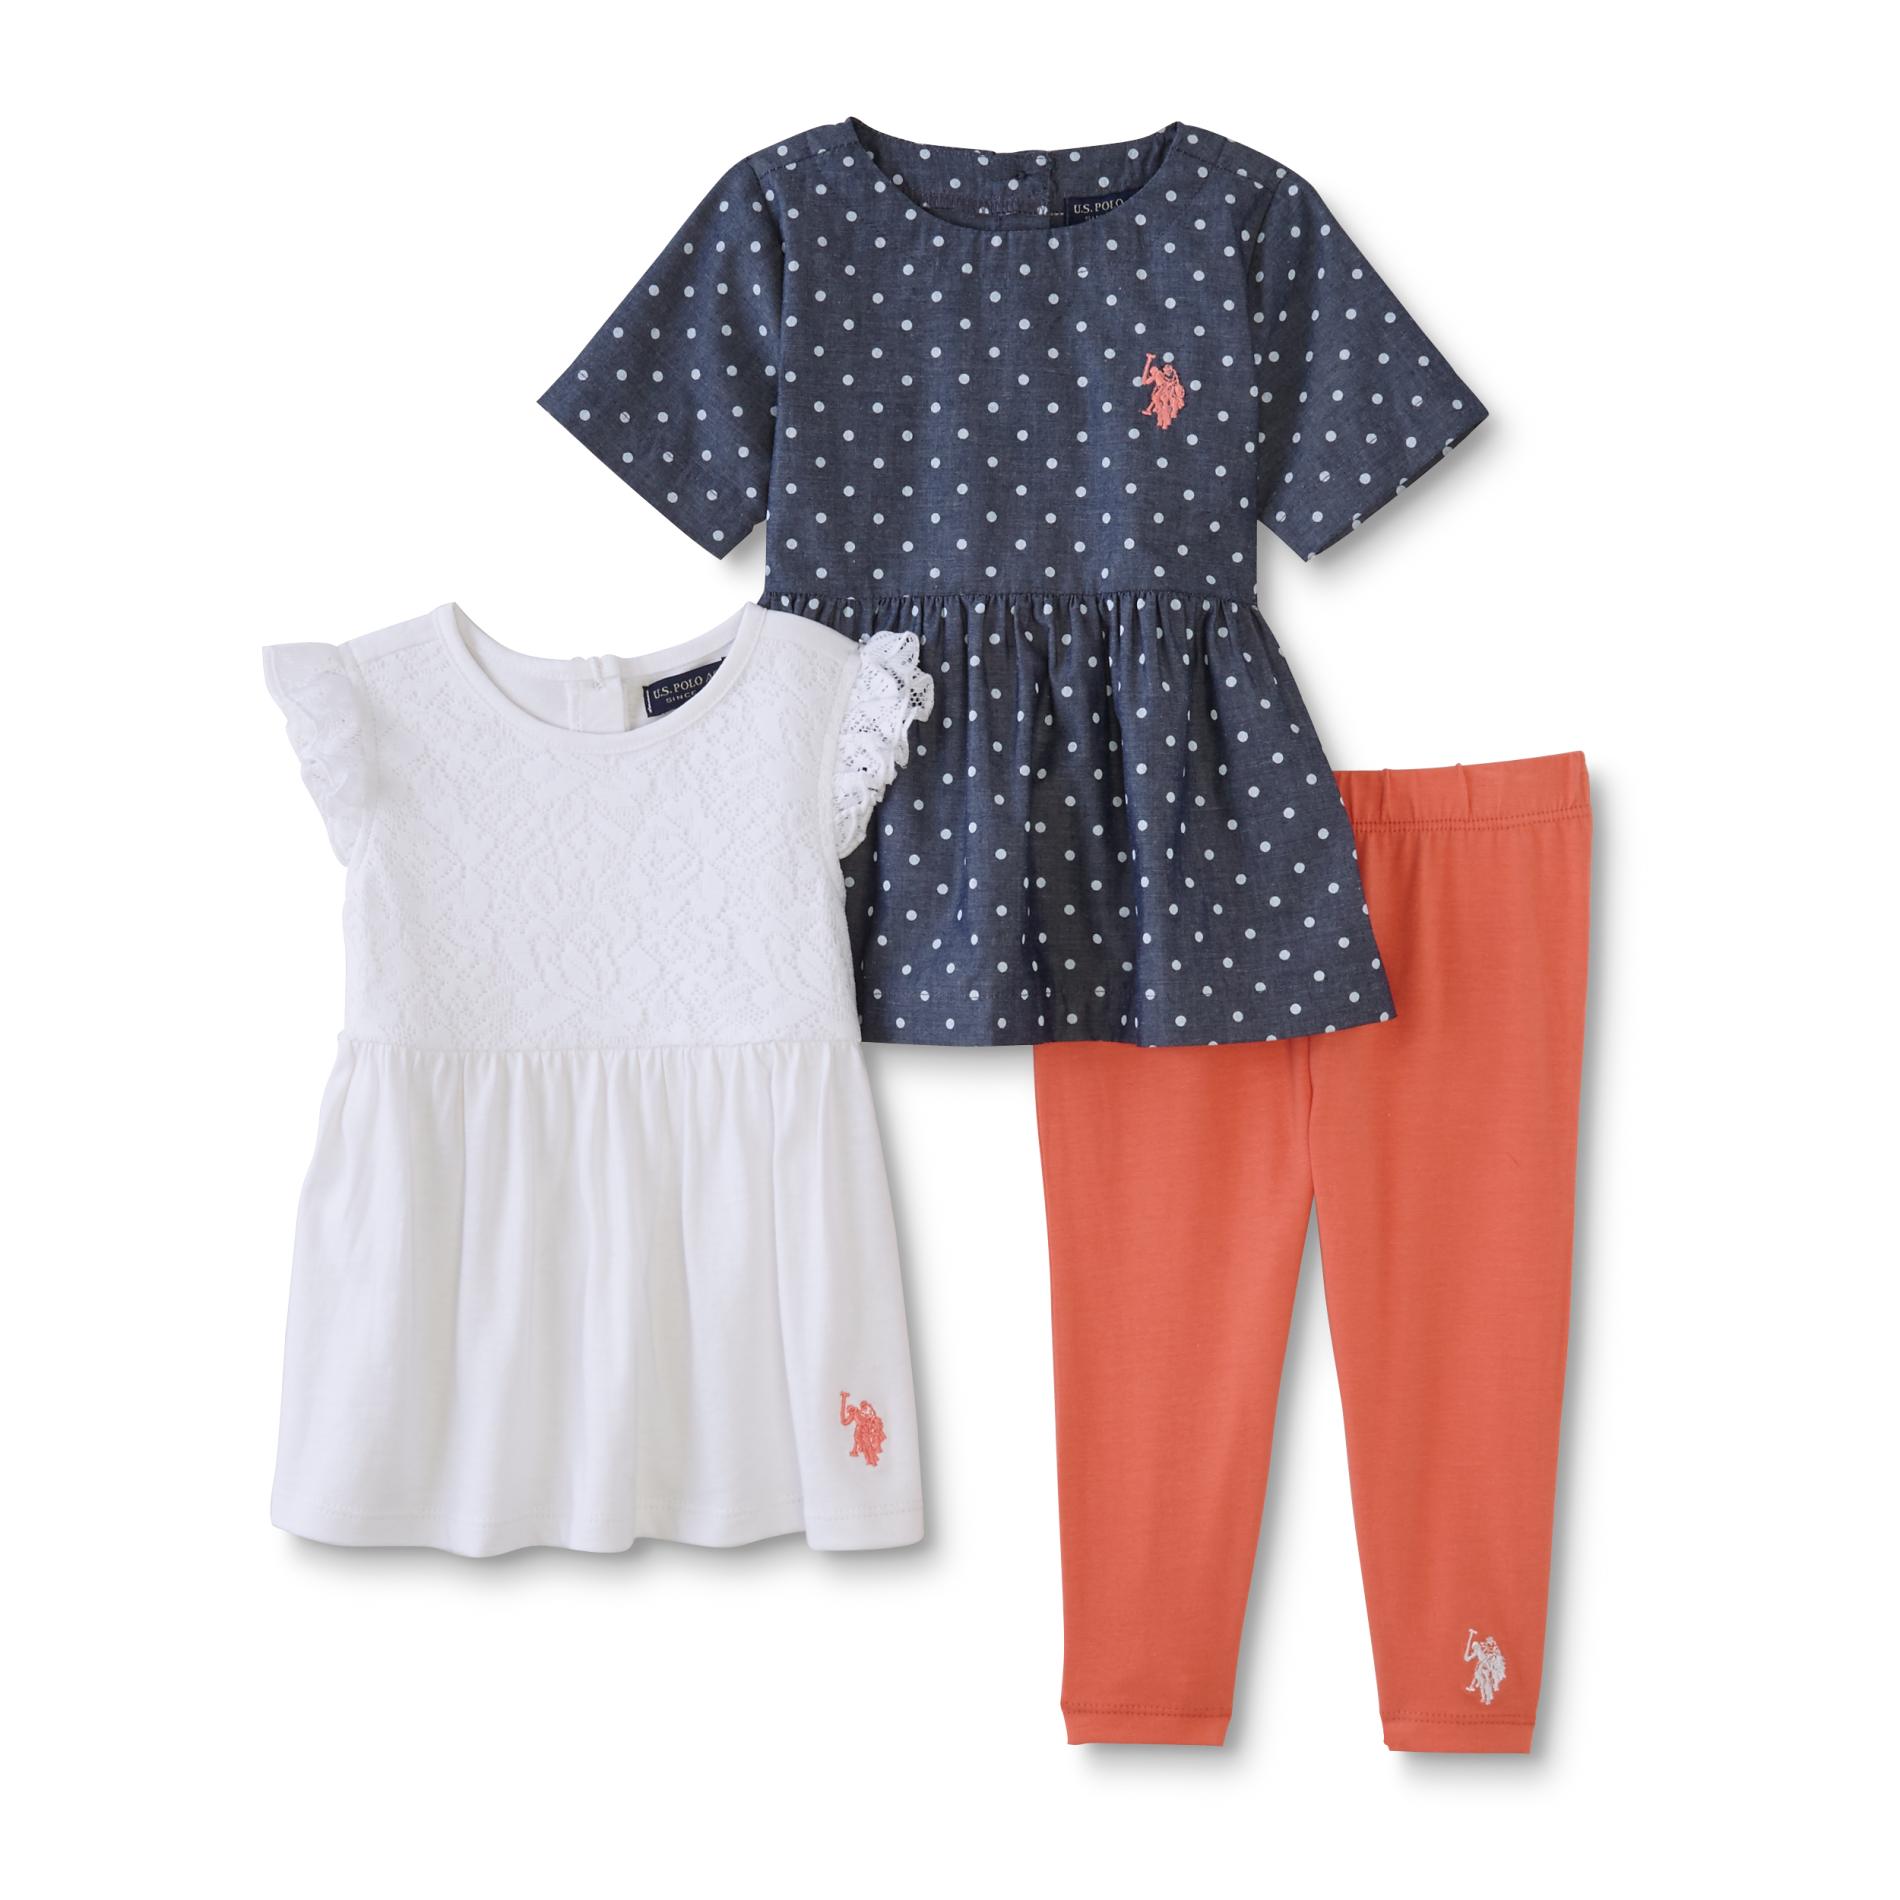 U.S. Polo Assn. Infant & Toddler Girls' 2 Dresses & Leggings - Polka Dot